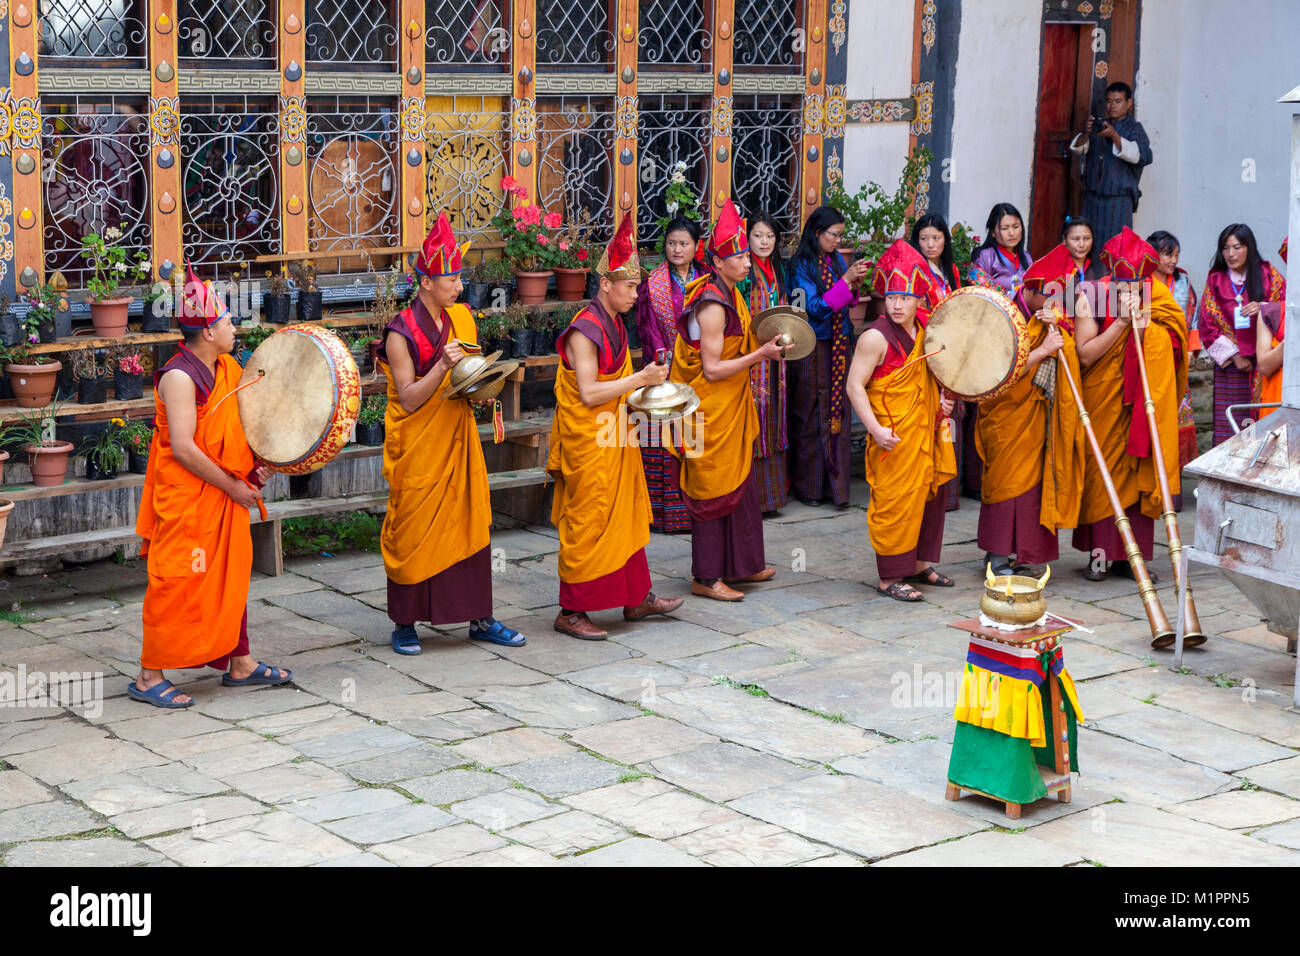 Bumthang, Bhoutan. Les moines bouddhistes en cérémonie religieuse au cour de Jambay Monastère Lhakhang. Banque D'Images